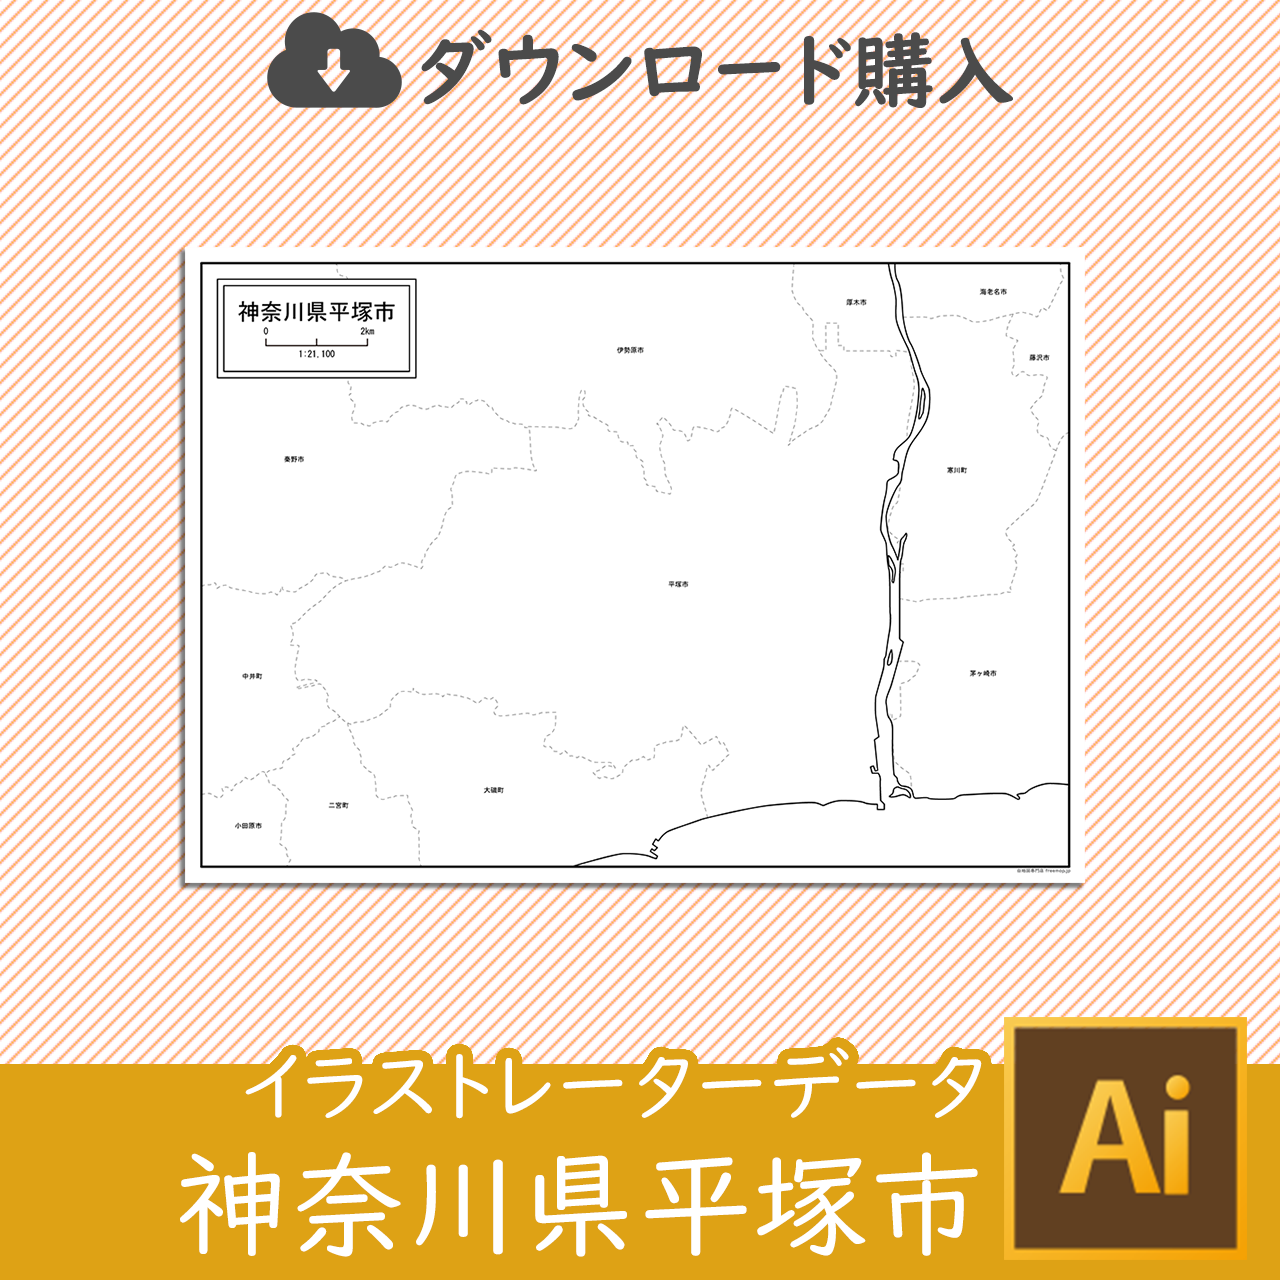 平塚市のaiデータのサムネイル画像